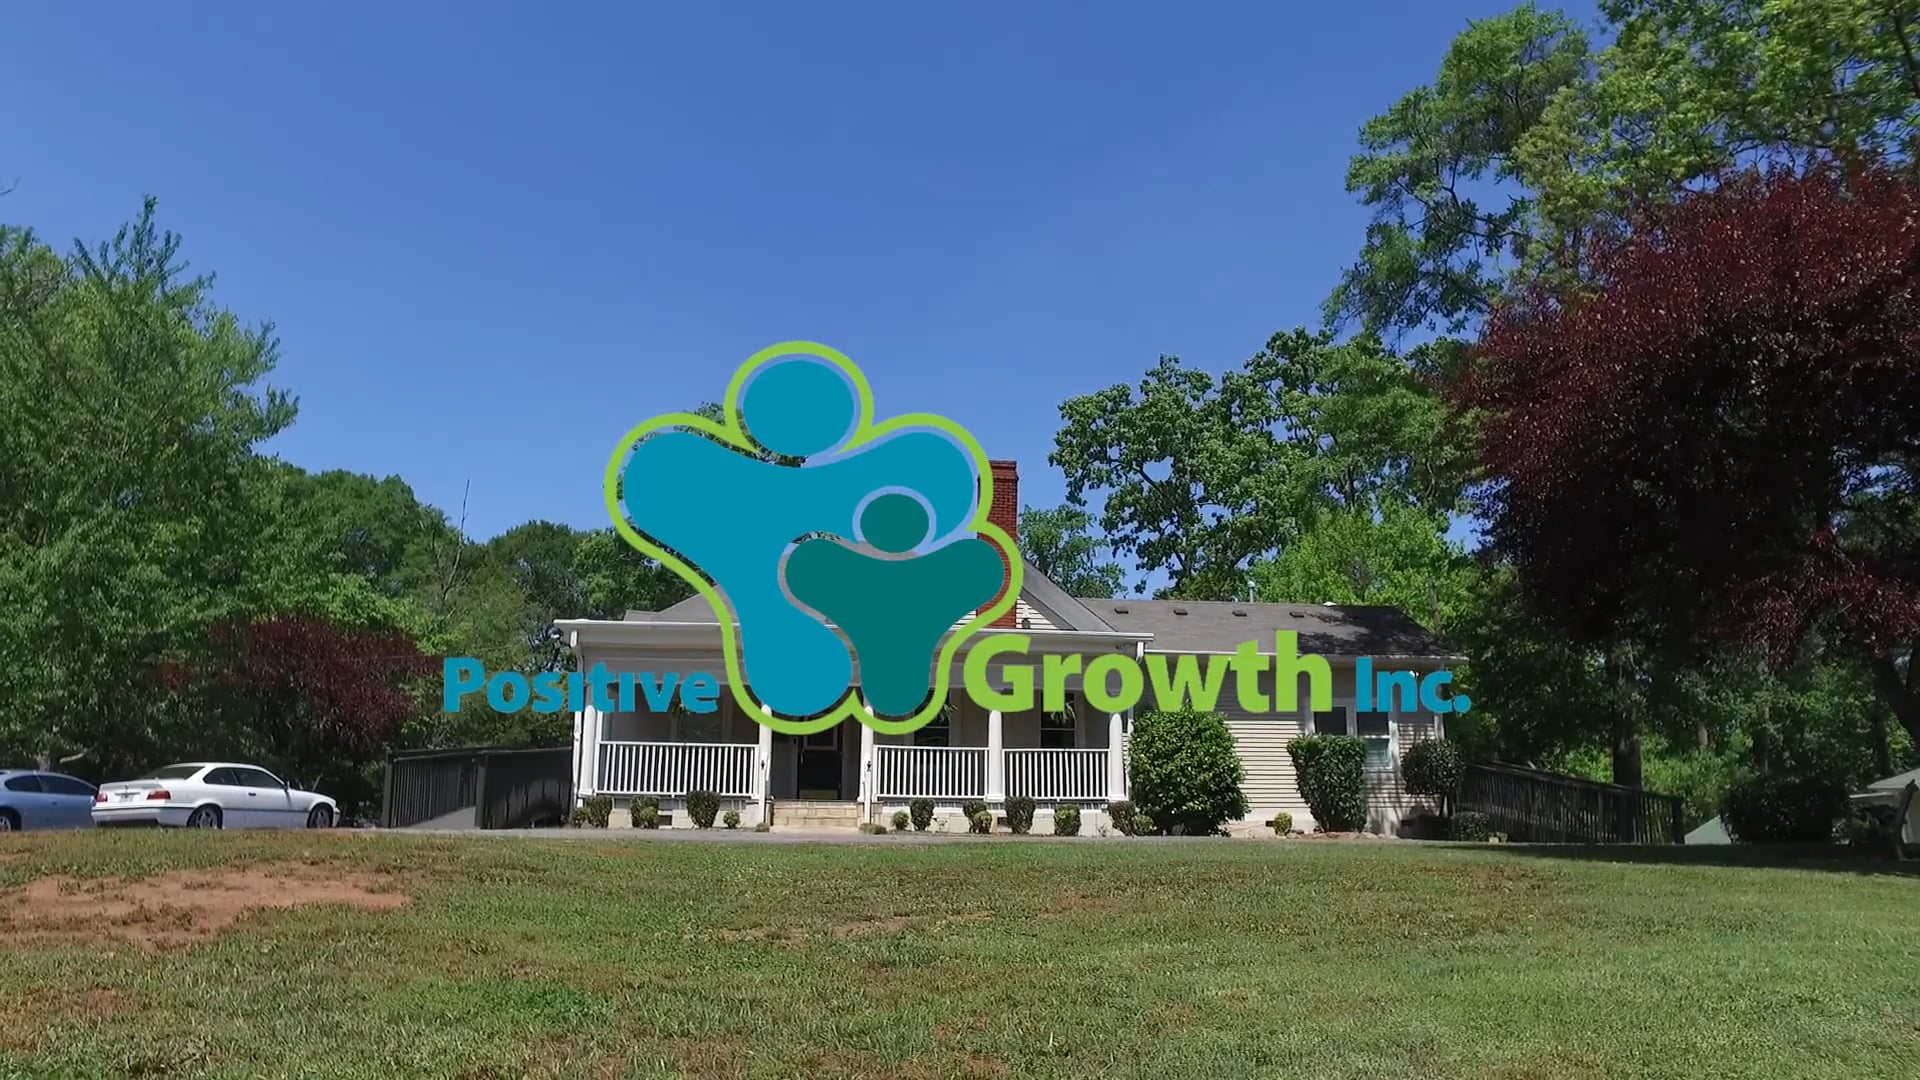 Positive Growth Inc.